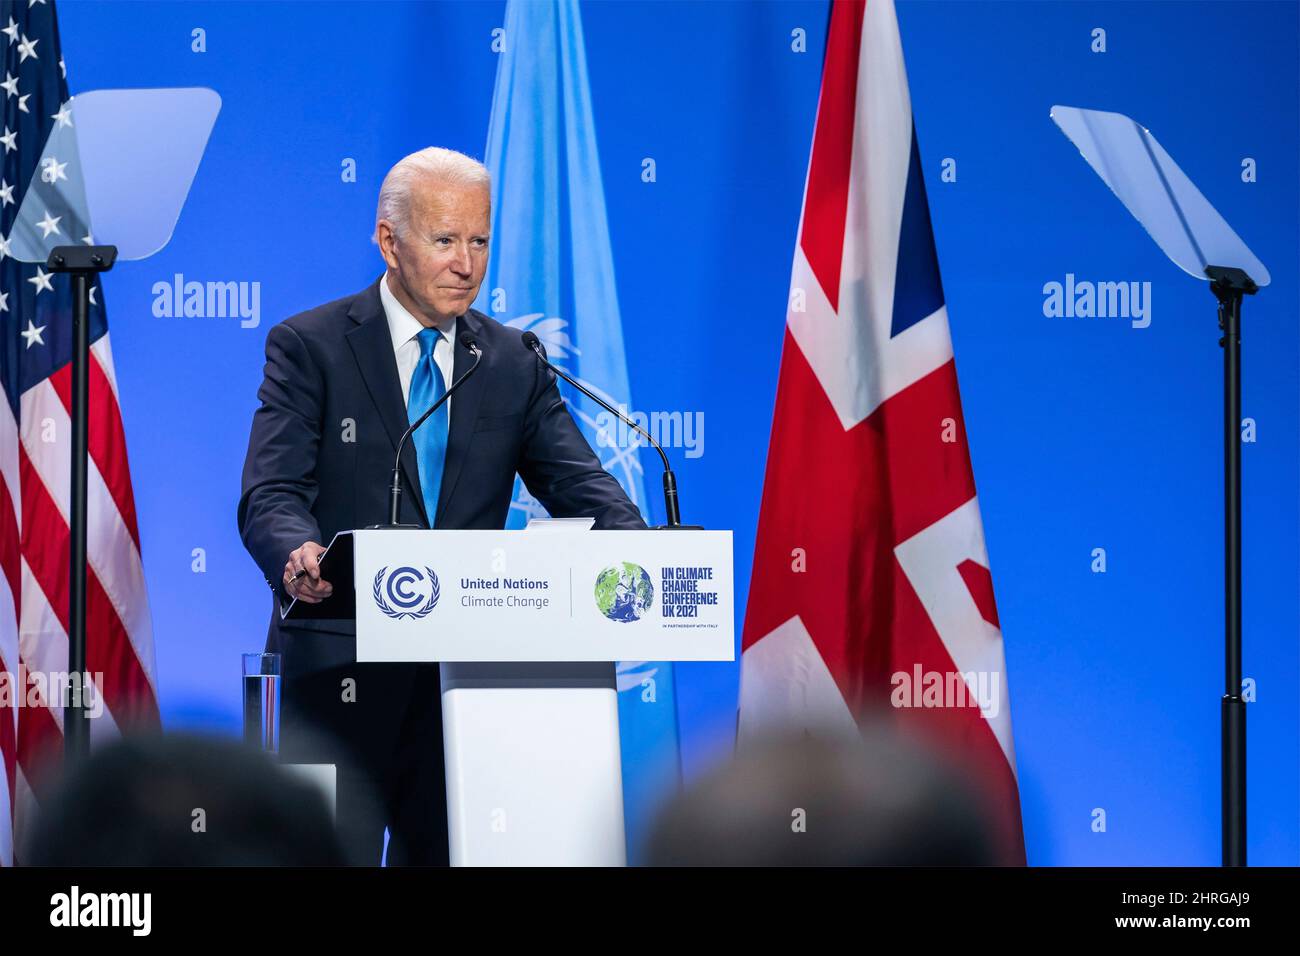 Joe Biden, président des États-Unis, lors d'une conférence de presse à la suite de la Conférence des Nations Unies sur les changements climatiques COP26 au campus de l'événement écossais, le 2 novembre 2021 à Glasgow, en Écosse. Banque D'Images